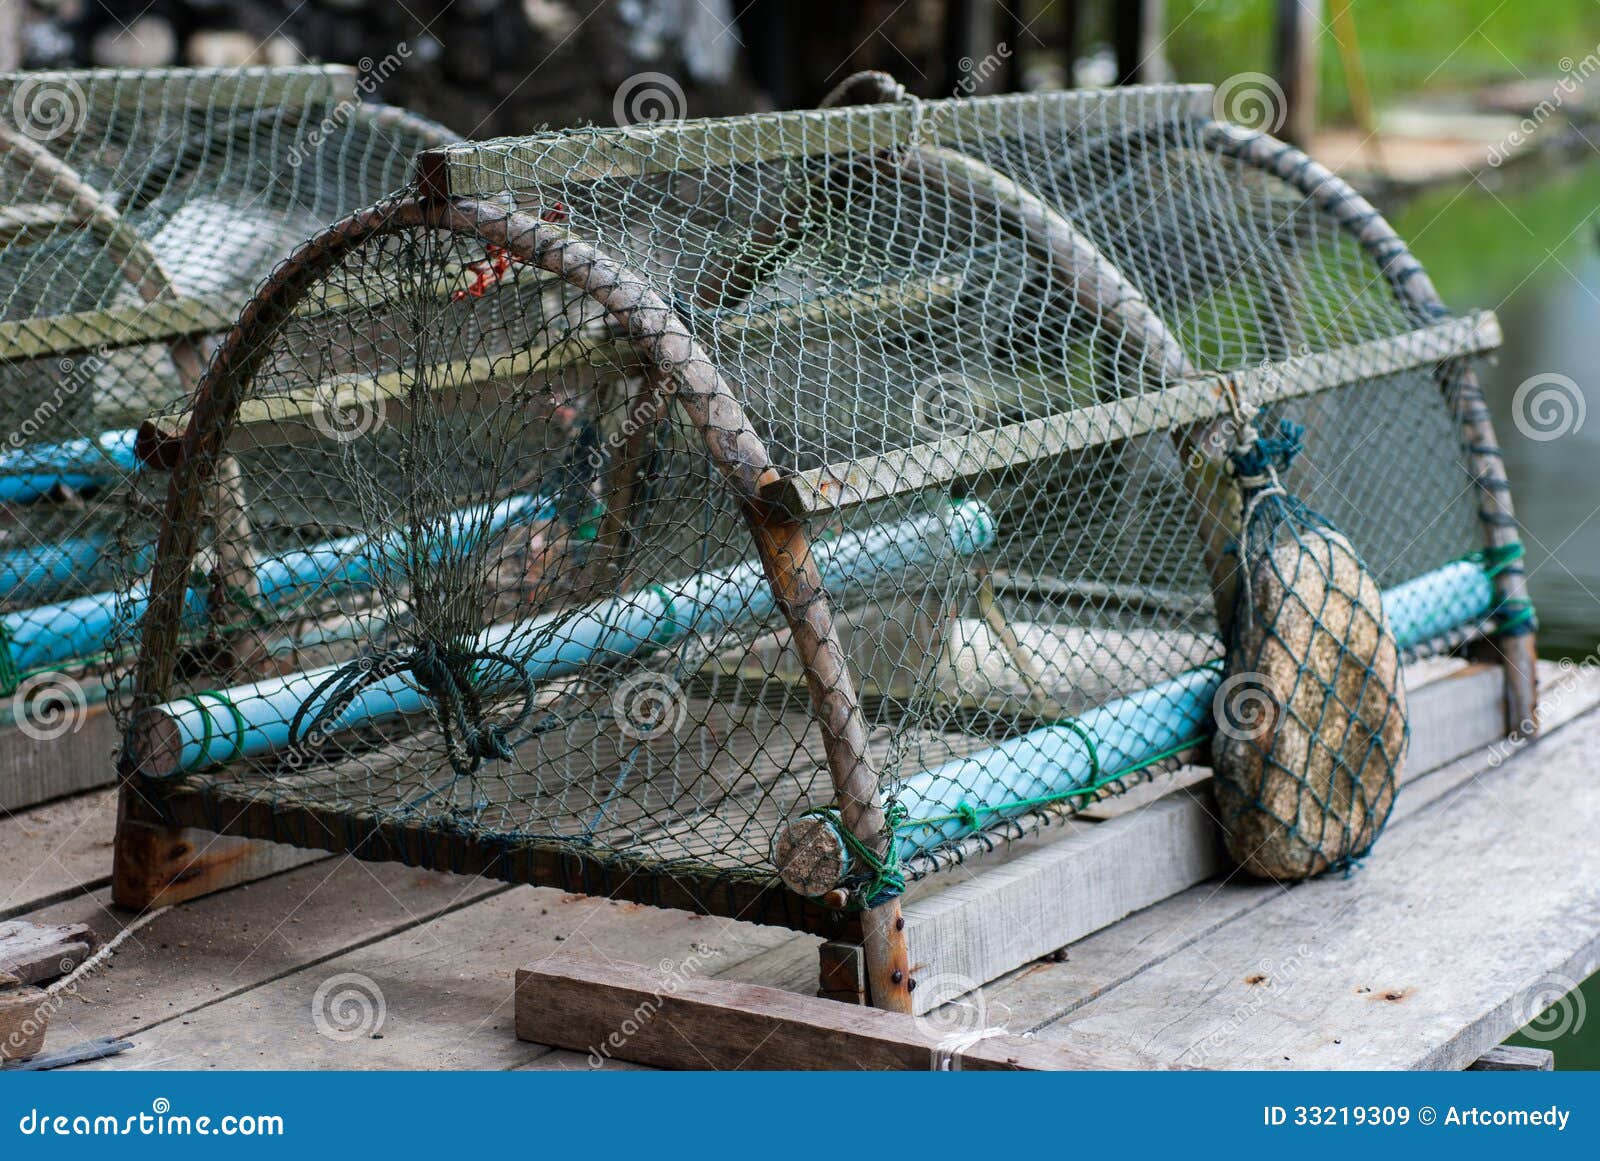 Grillage pour casier de pêche ou aquaculture